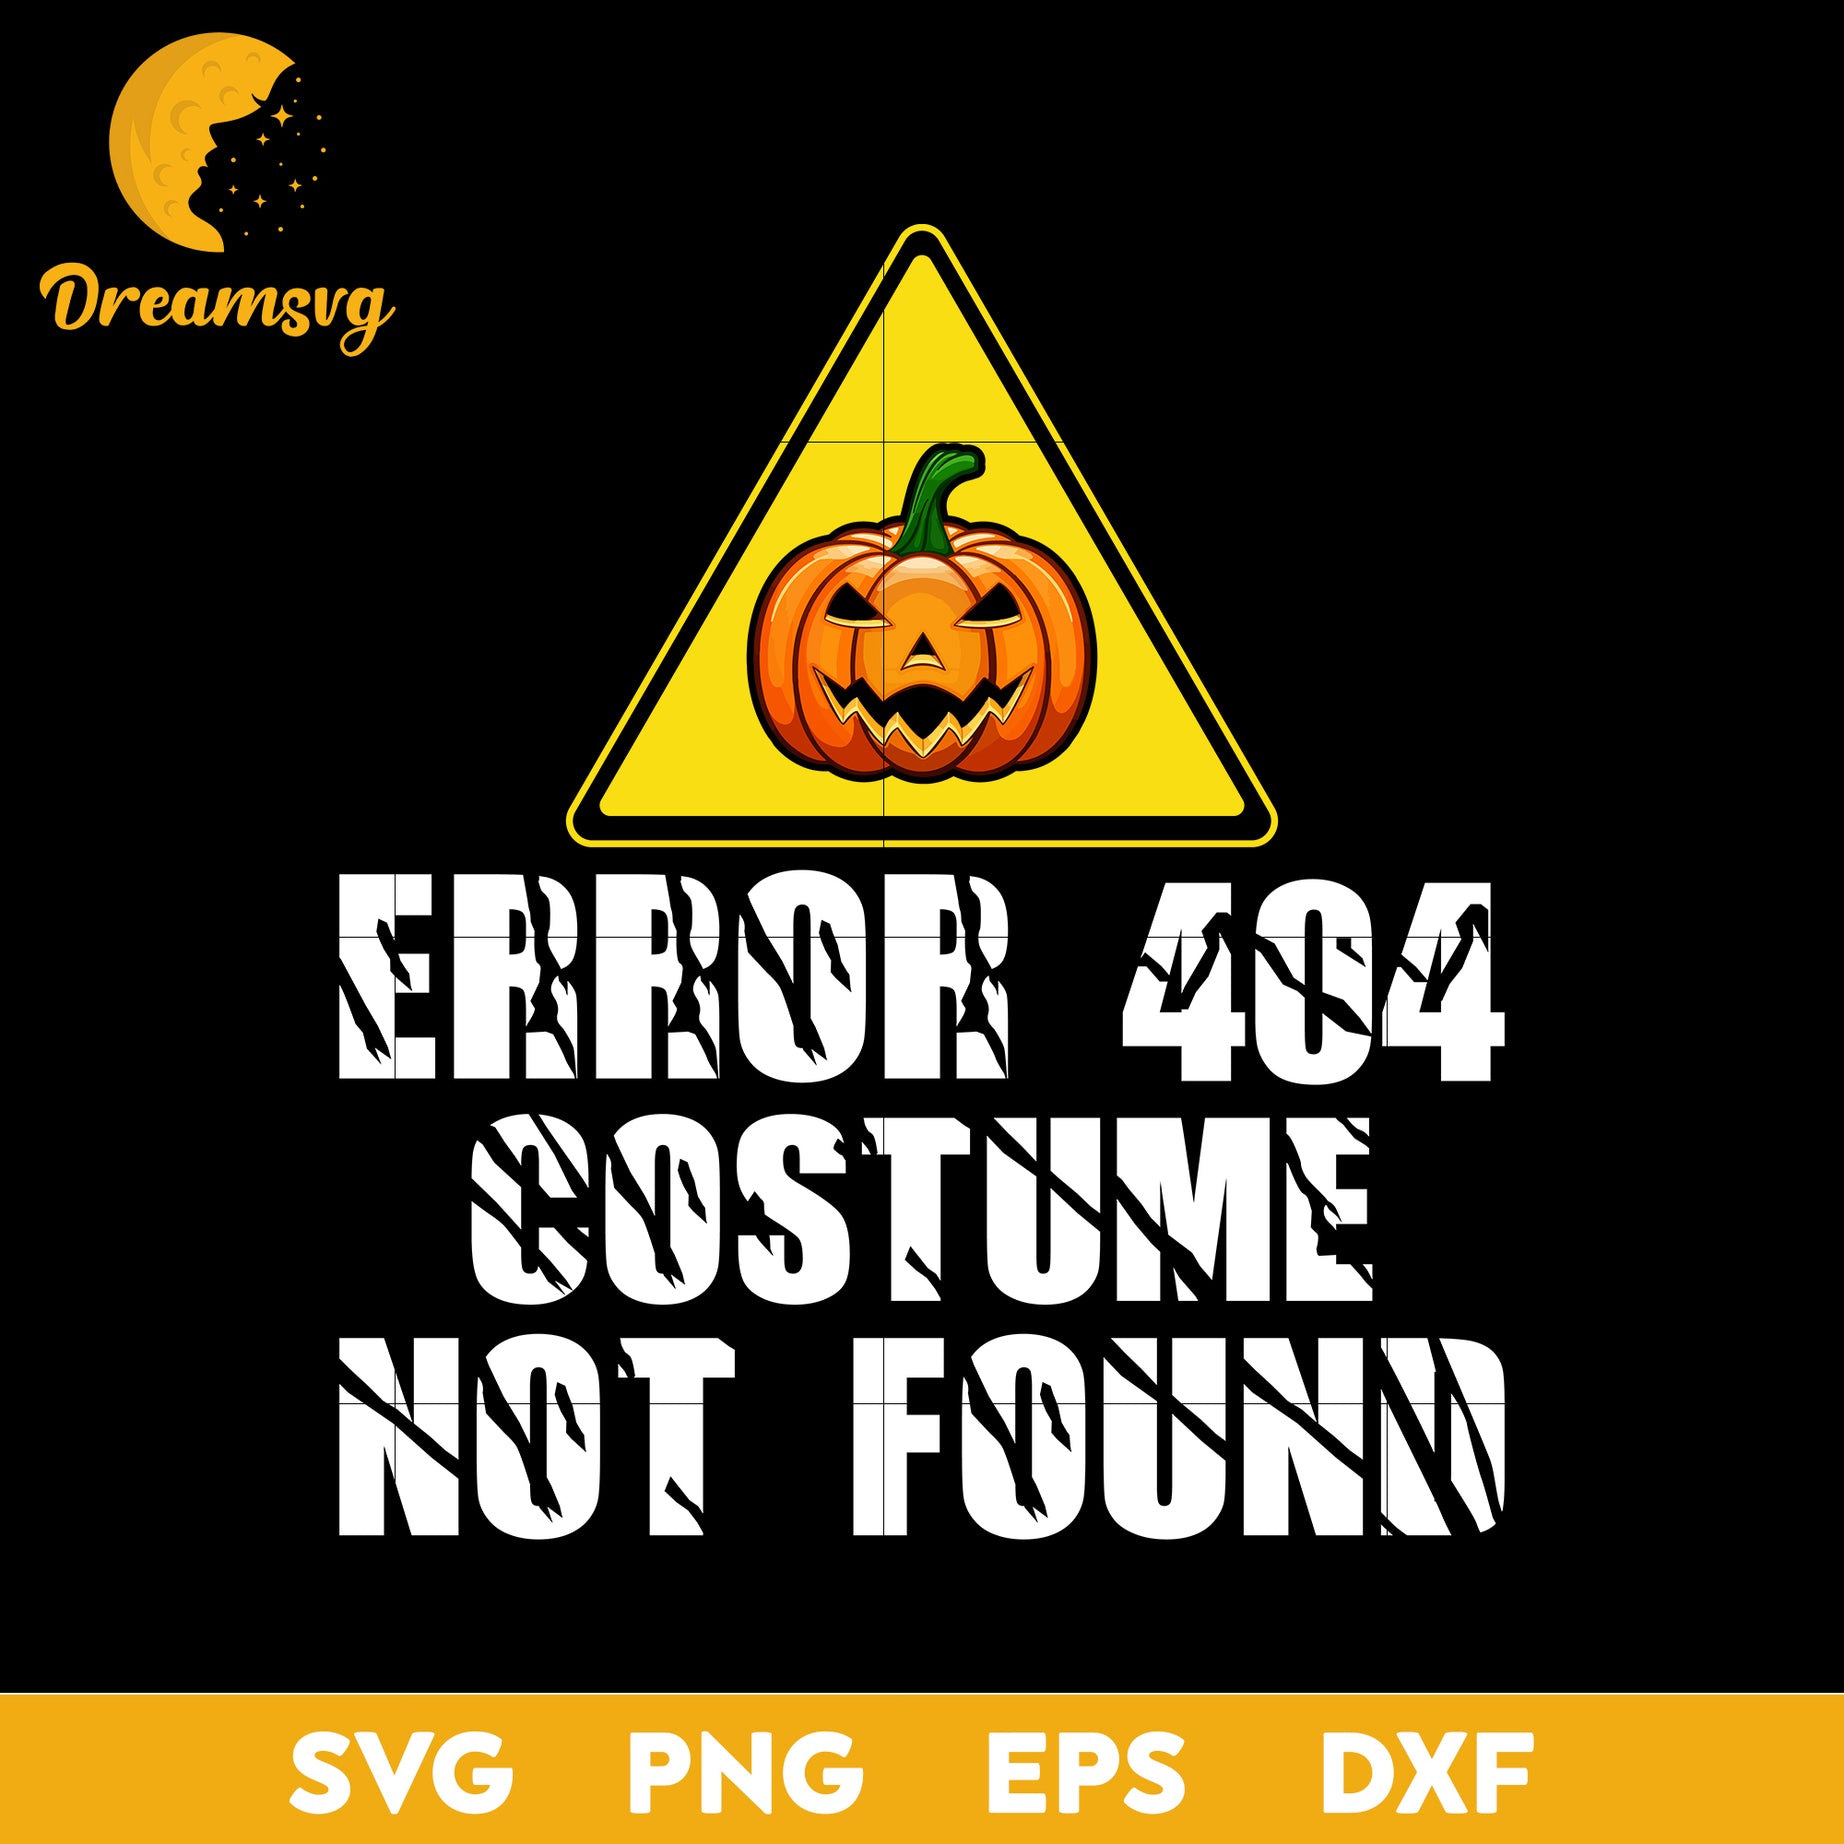 Error 404 Costume Not Found svg, Halloween svg, png, dxf, eps digital file.